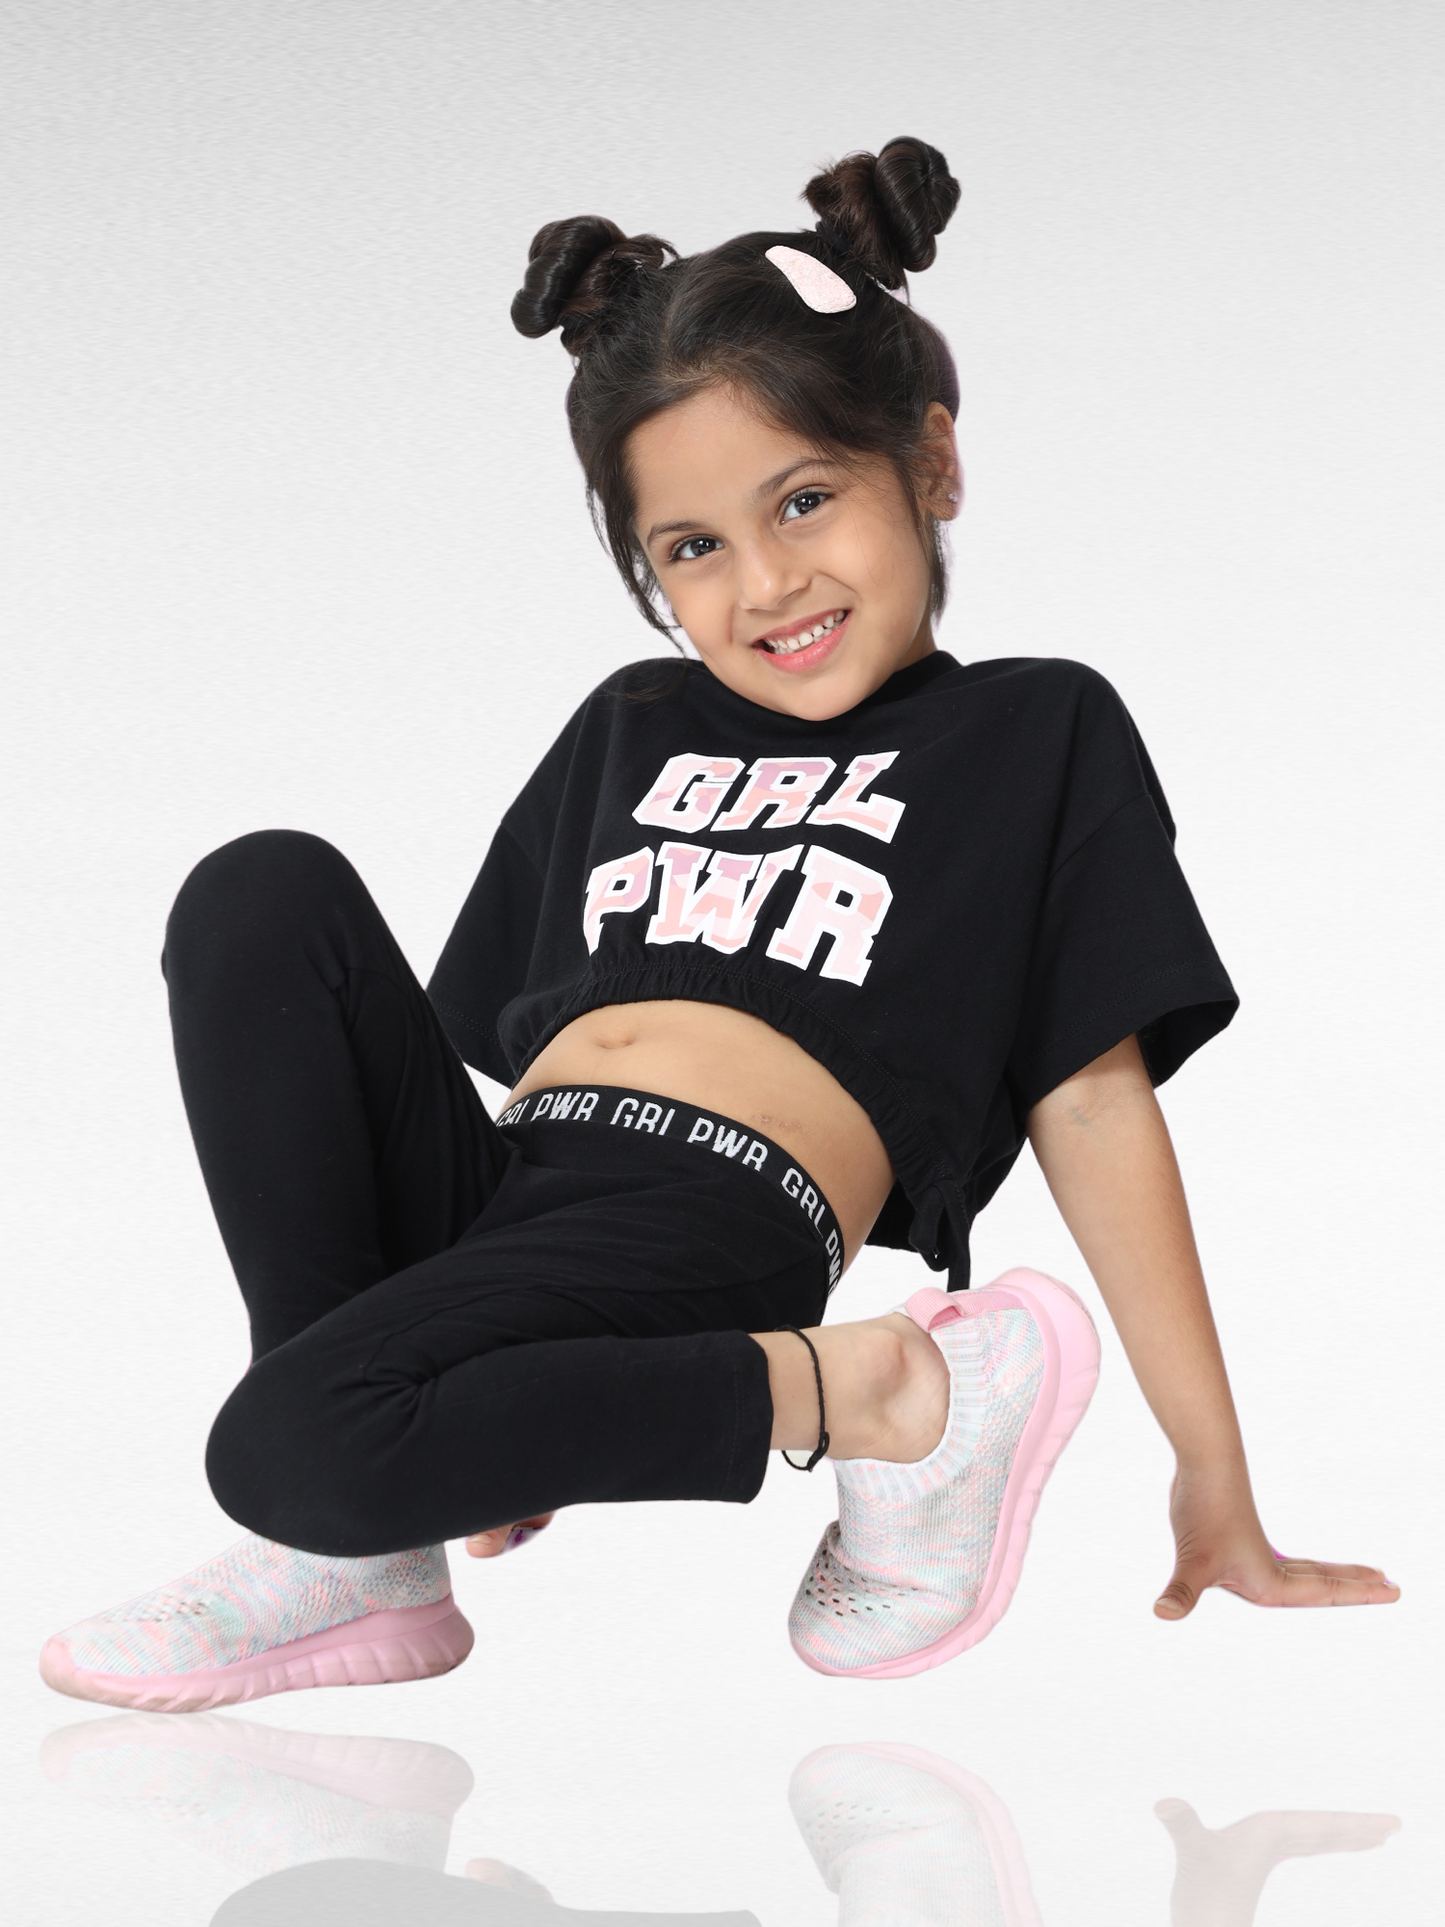 Girl Power Premium girls nightwear pajama set